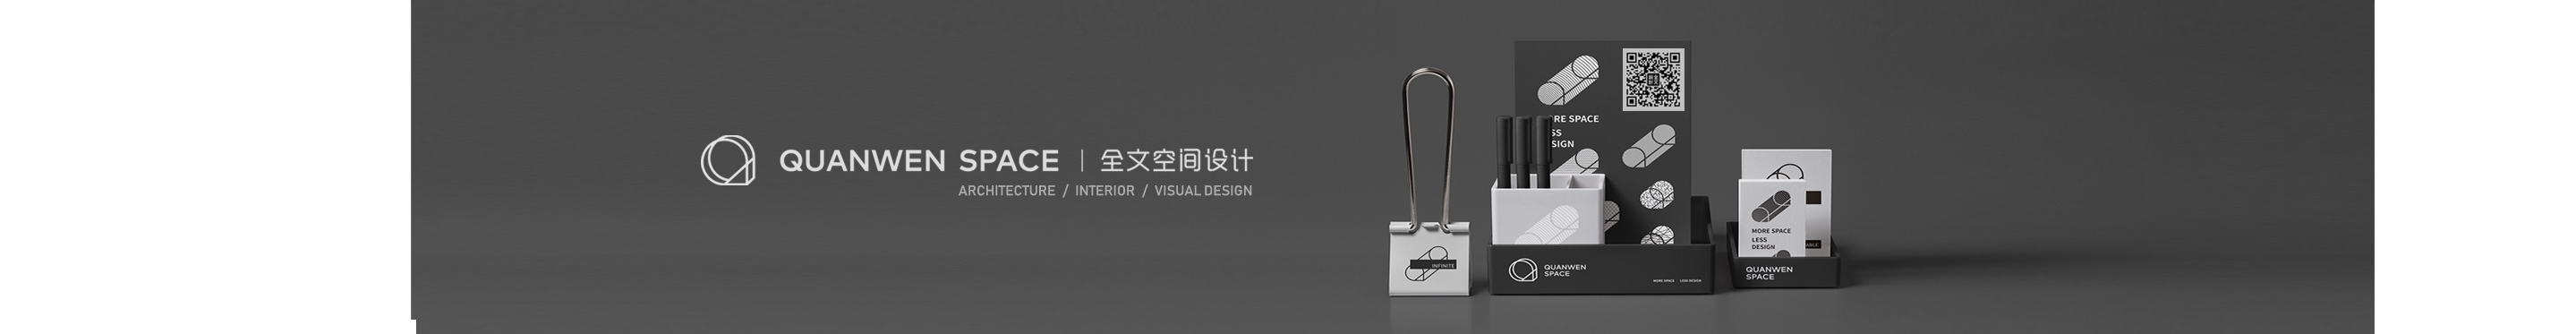 杭州室内设计师杭州全文室内设计的创作者主页